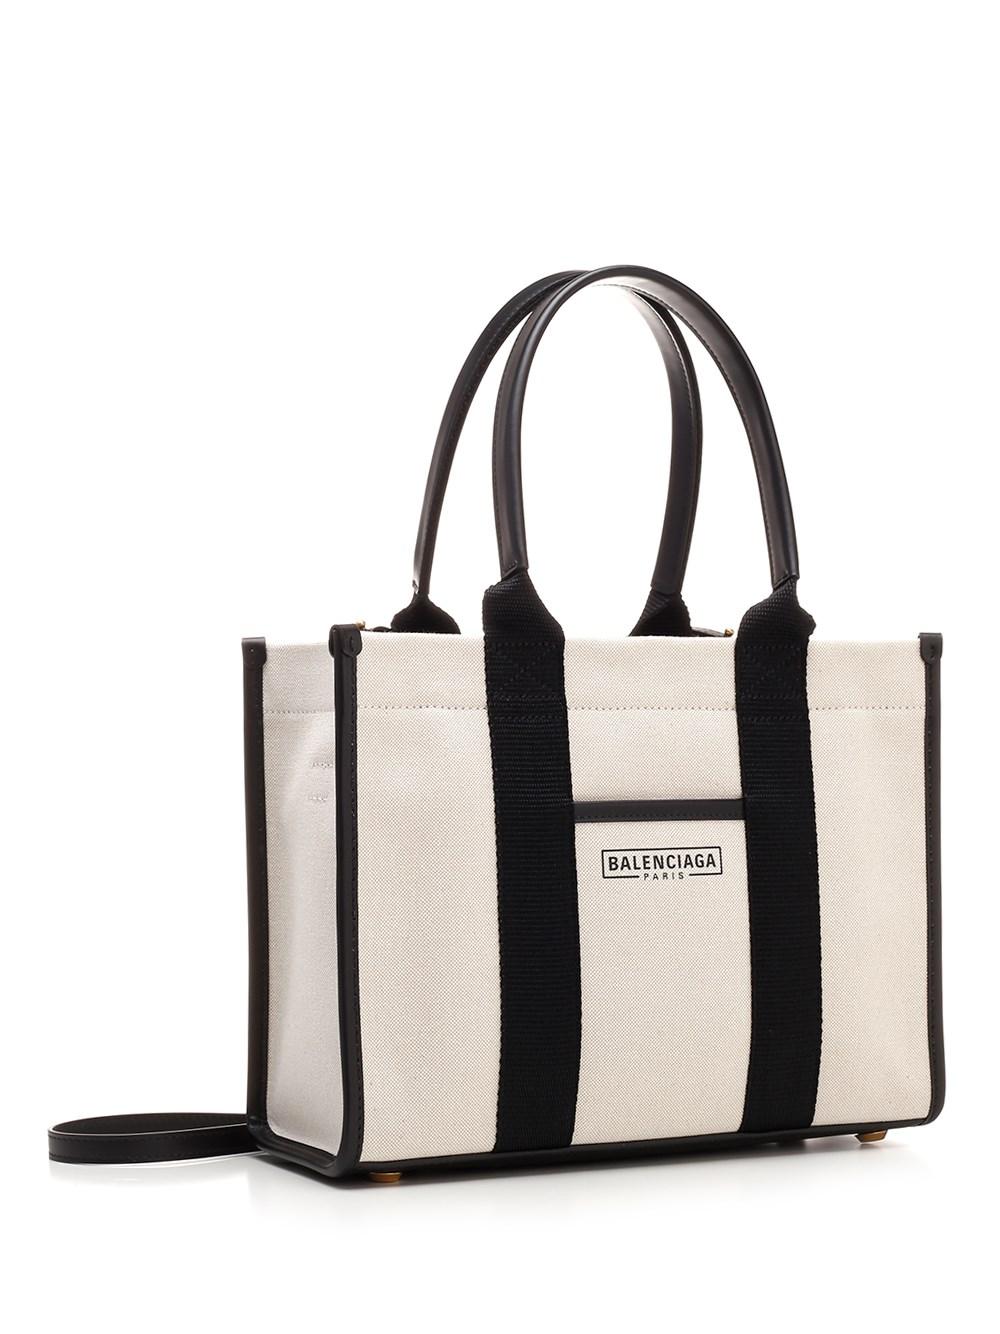 Balenciaga Hardware Small Tote Bag in Natural | Lyst